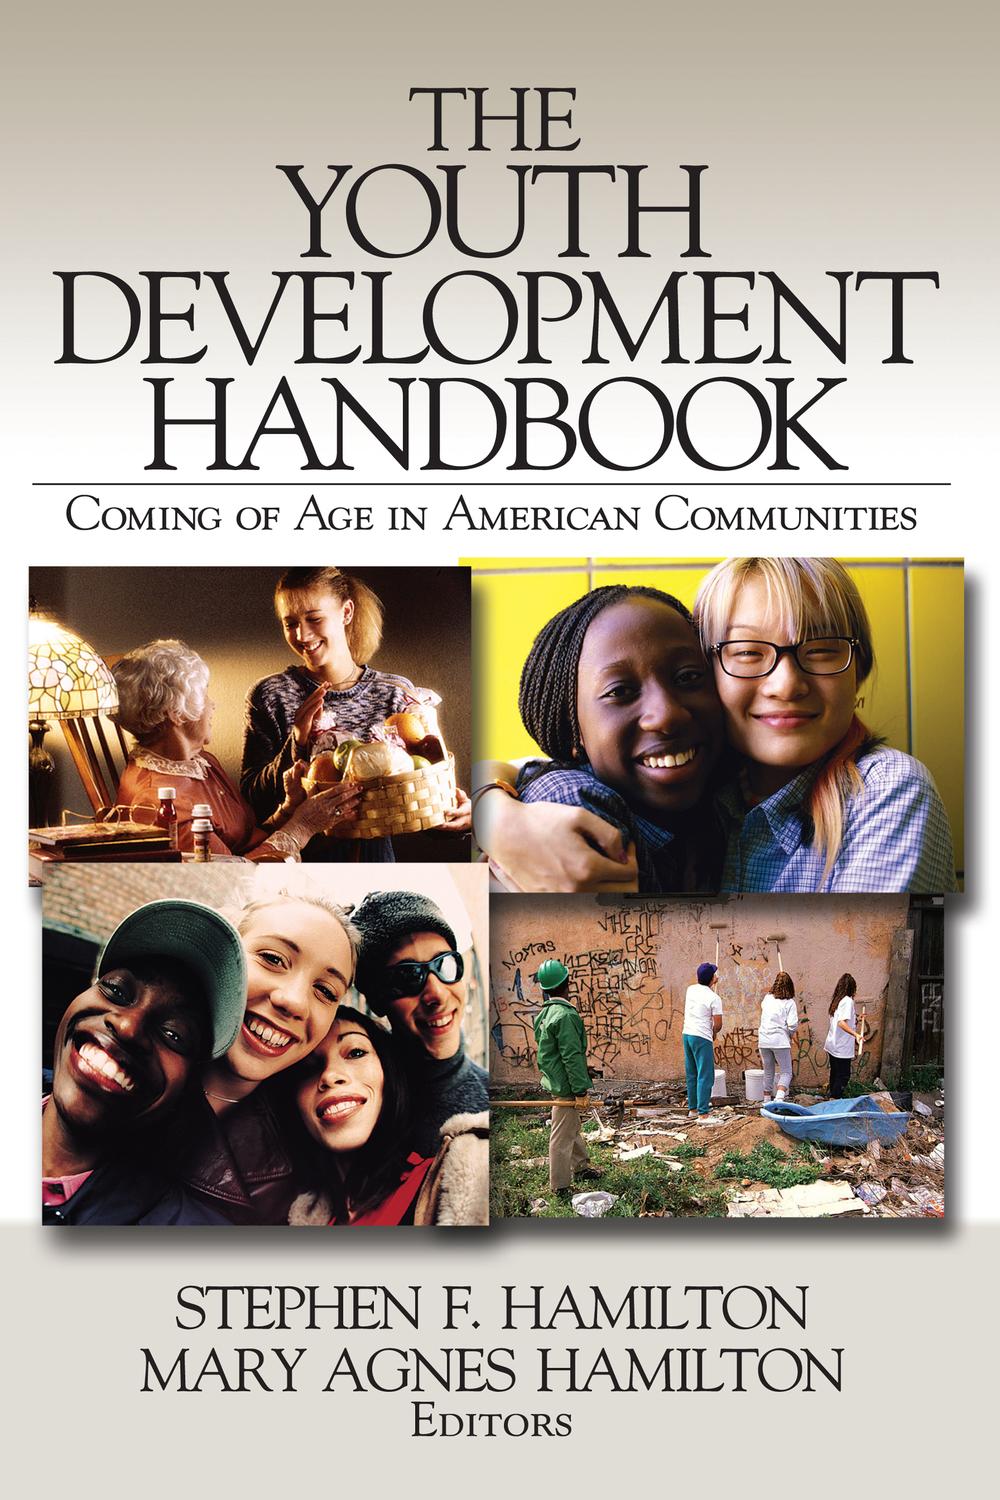 The Youth Development Handbook - Stephen F. Hamilton, Mary Agnes Hamilton